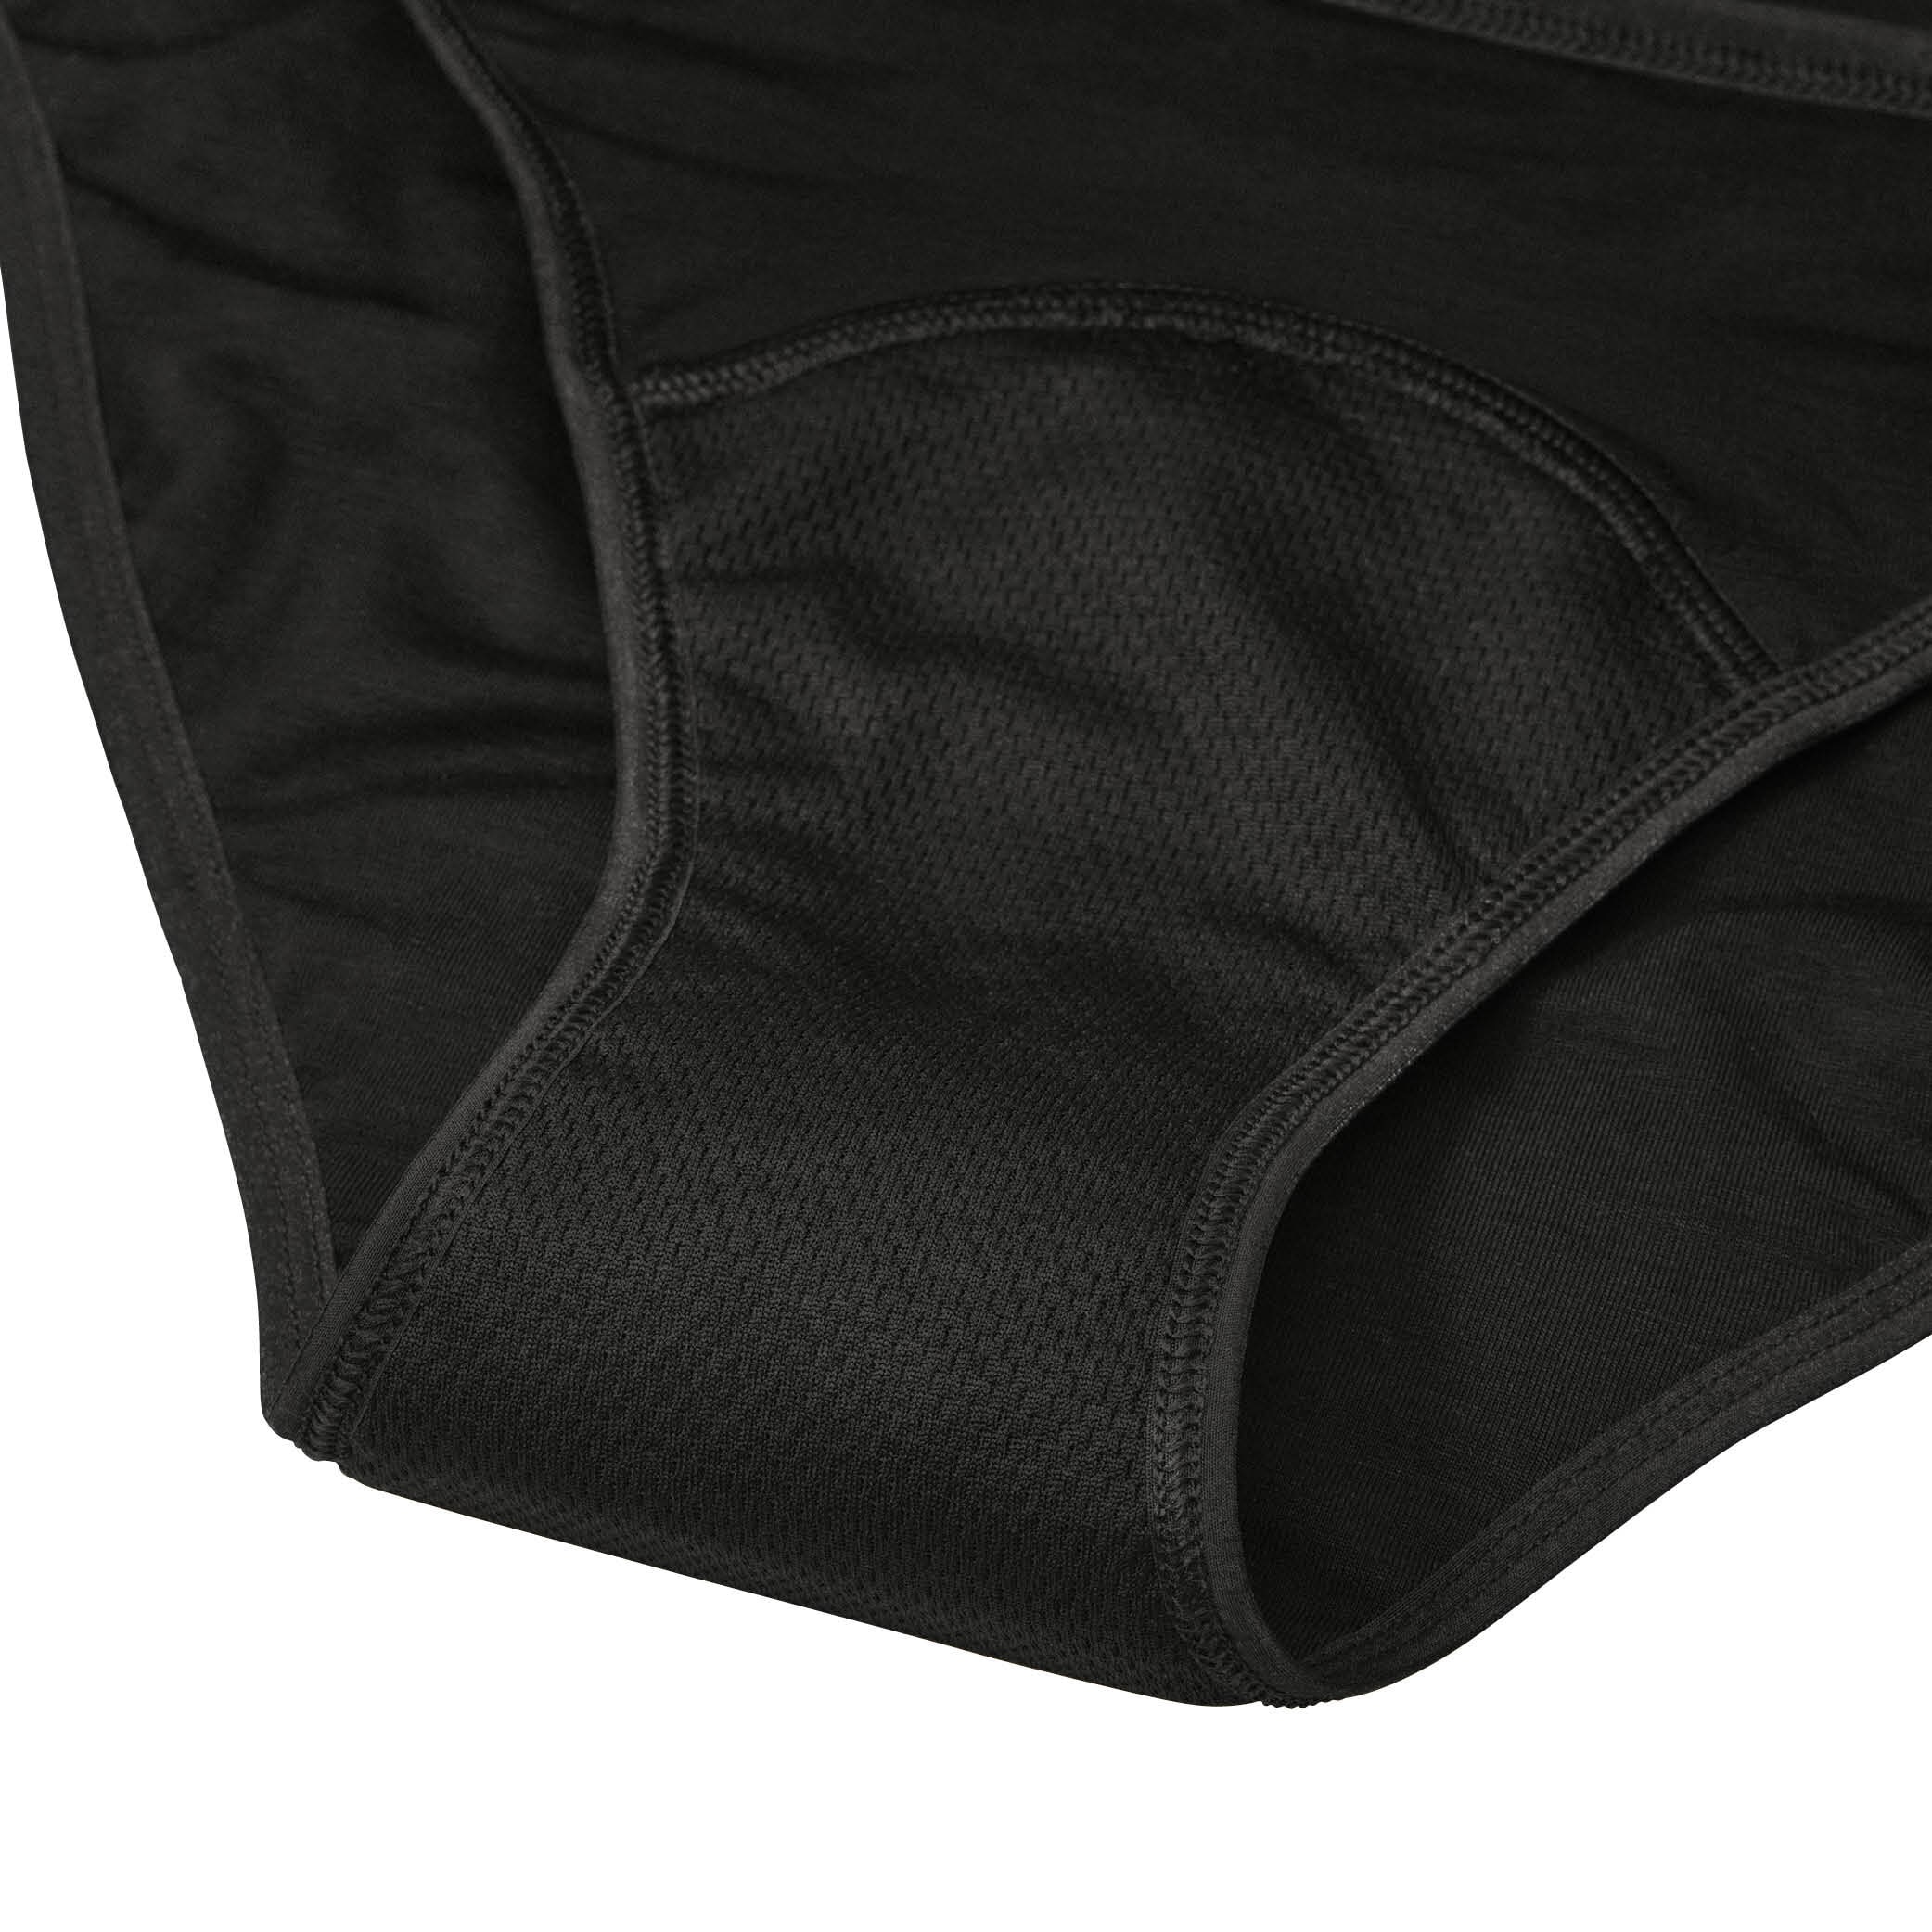 Period underwear svart storlek XS